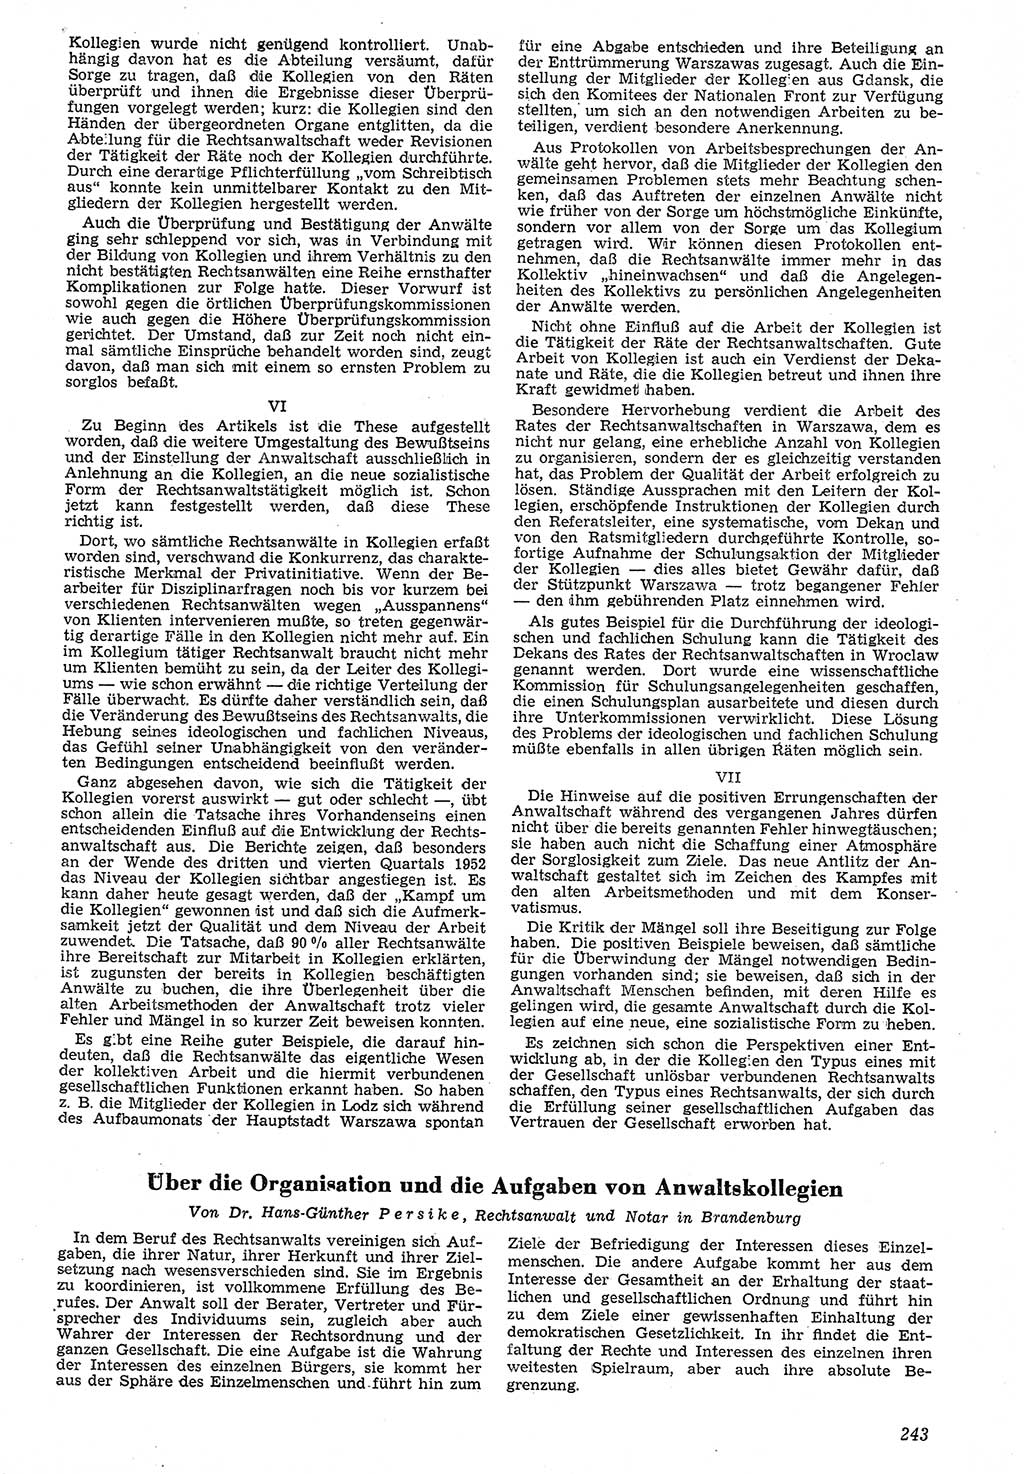 Neue Justiz (NJ), Zeitschrift für Recht und Rechtswissenschaft [Deutsche Demokratische Republik (DDR)], 7. Jahrgang 1953, Seite 243 (NJ DDR 1953, S. 243)